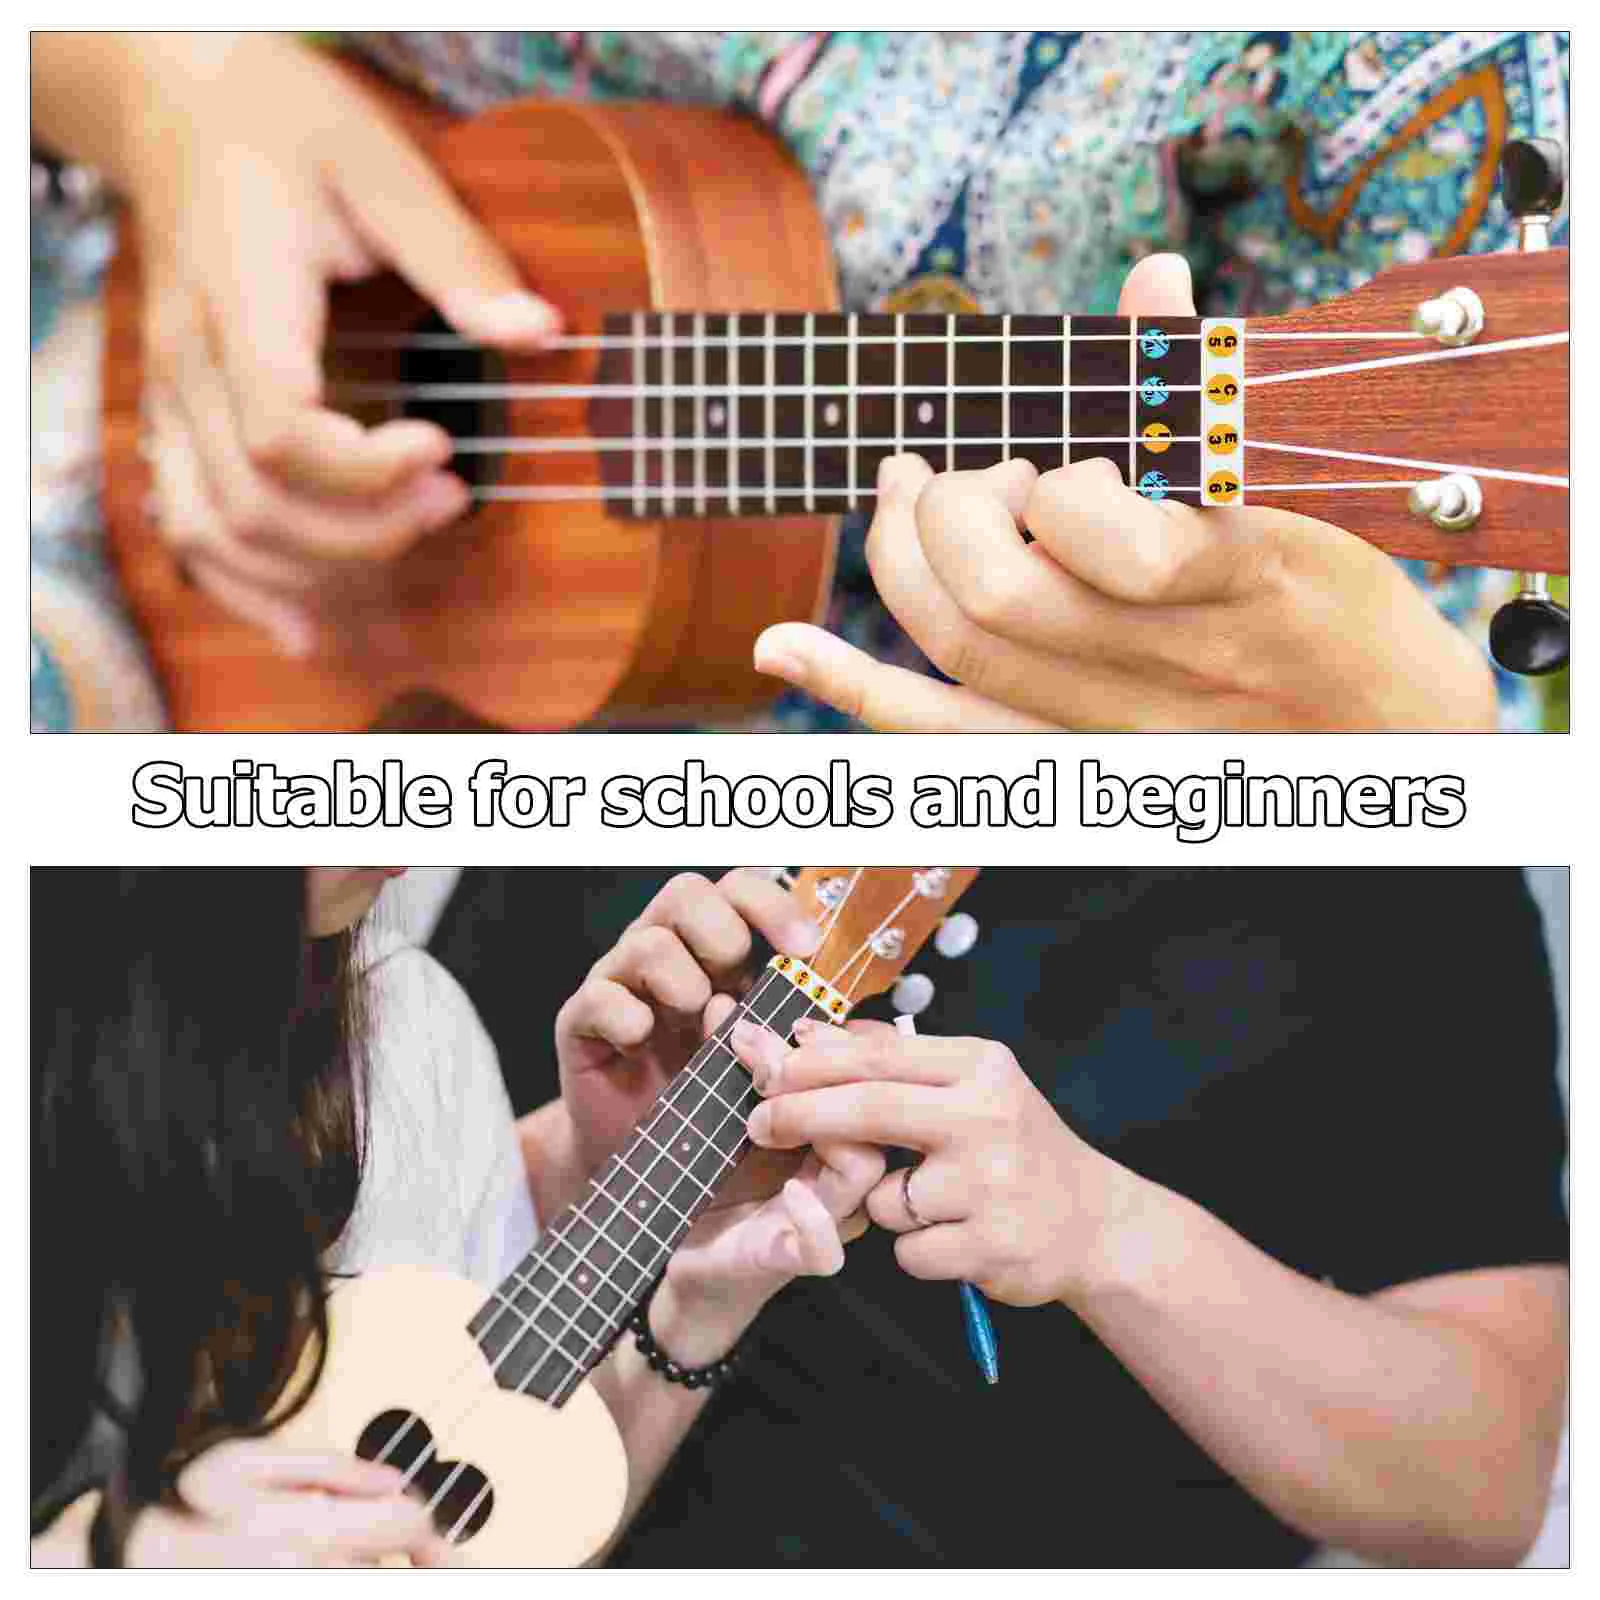 Наклейки на гриф гавайской гитары, наклейки для гитарных нот, наклейка с цветовой кодировкой, карта ладов на грифе, наклейка для изучения нот.